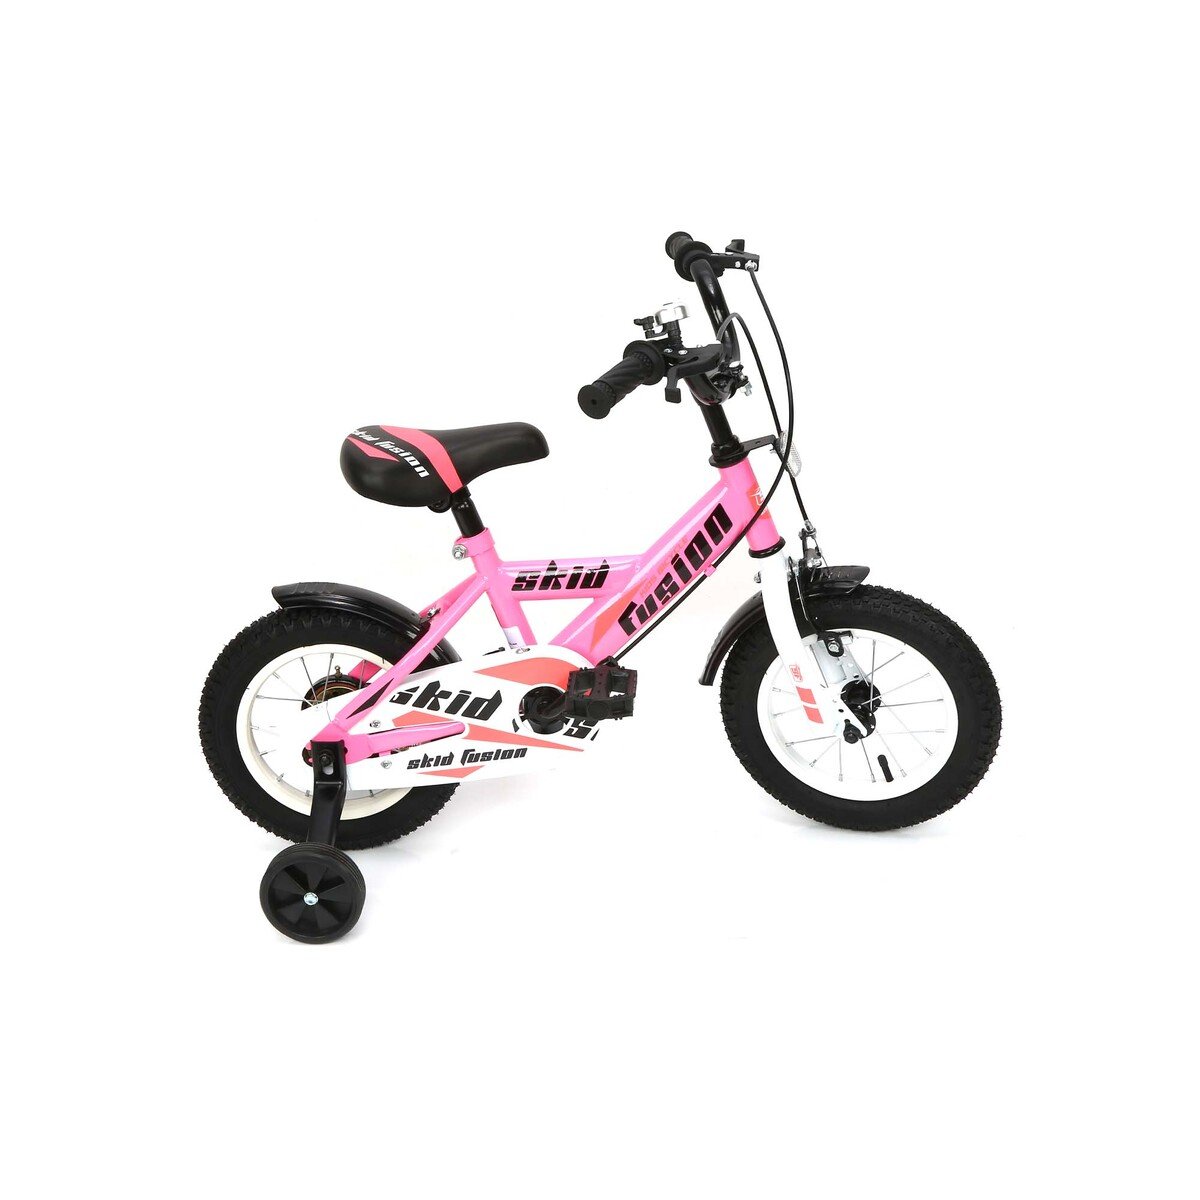 Skid Fusion Kids Bicycle 12" KX10-12 Pink